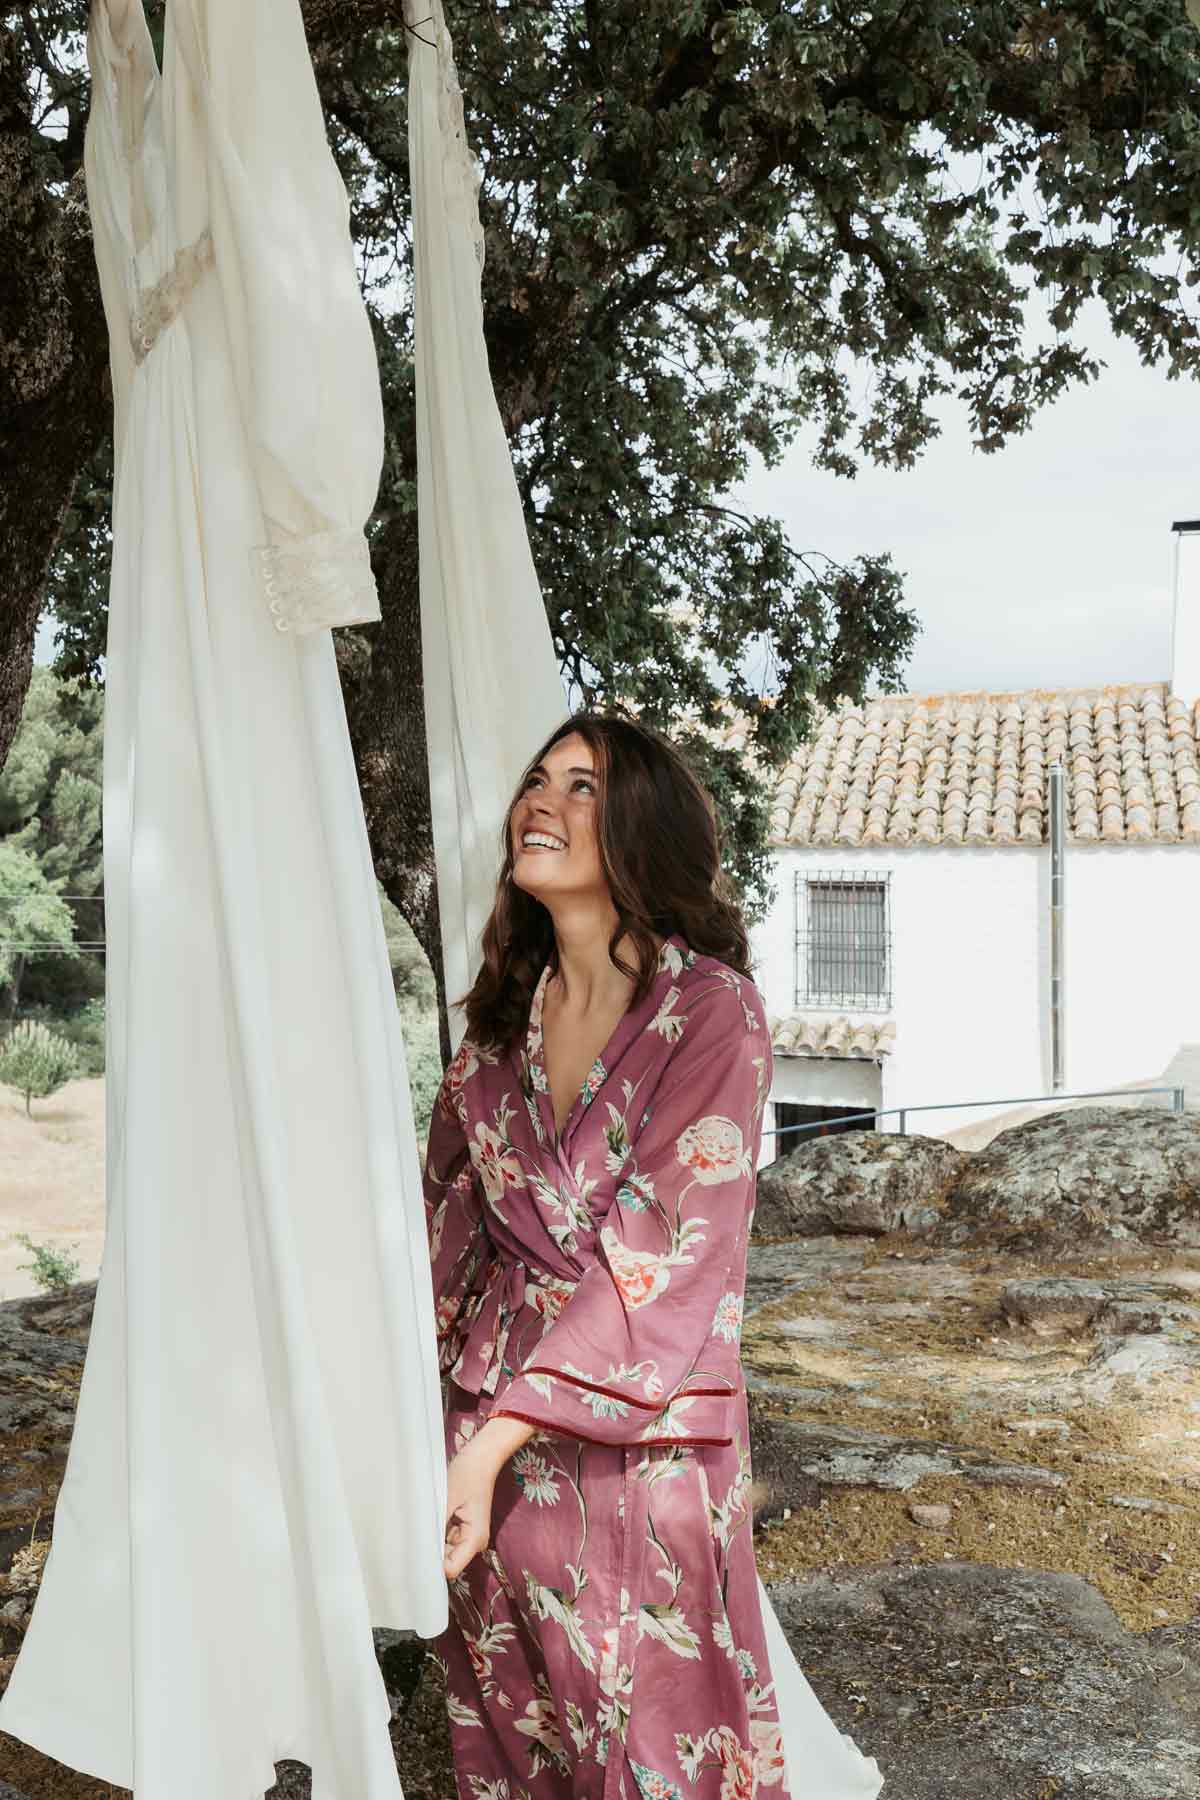 Novia en bata rosa contemplando su vestido entre olivos en Andújar, Jaen